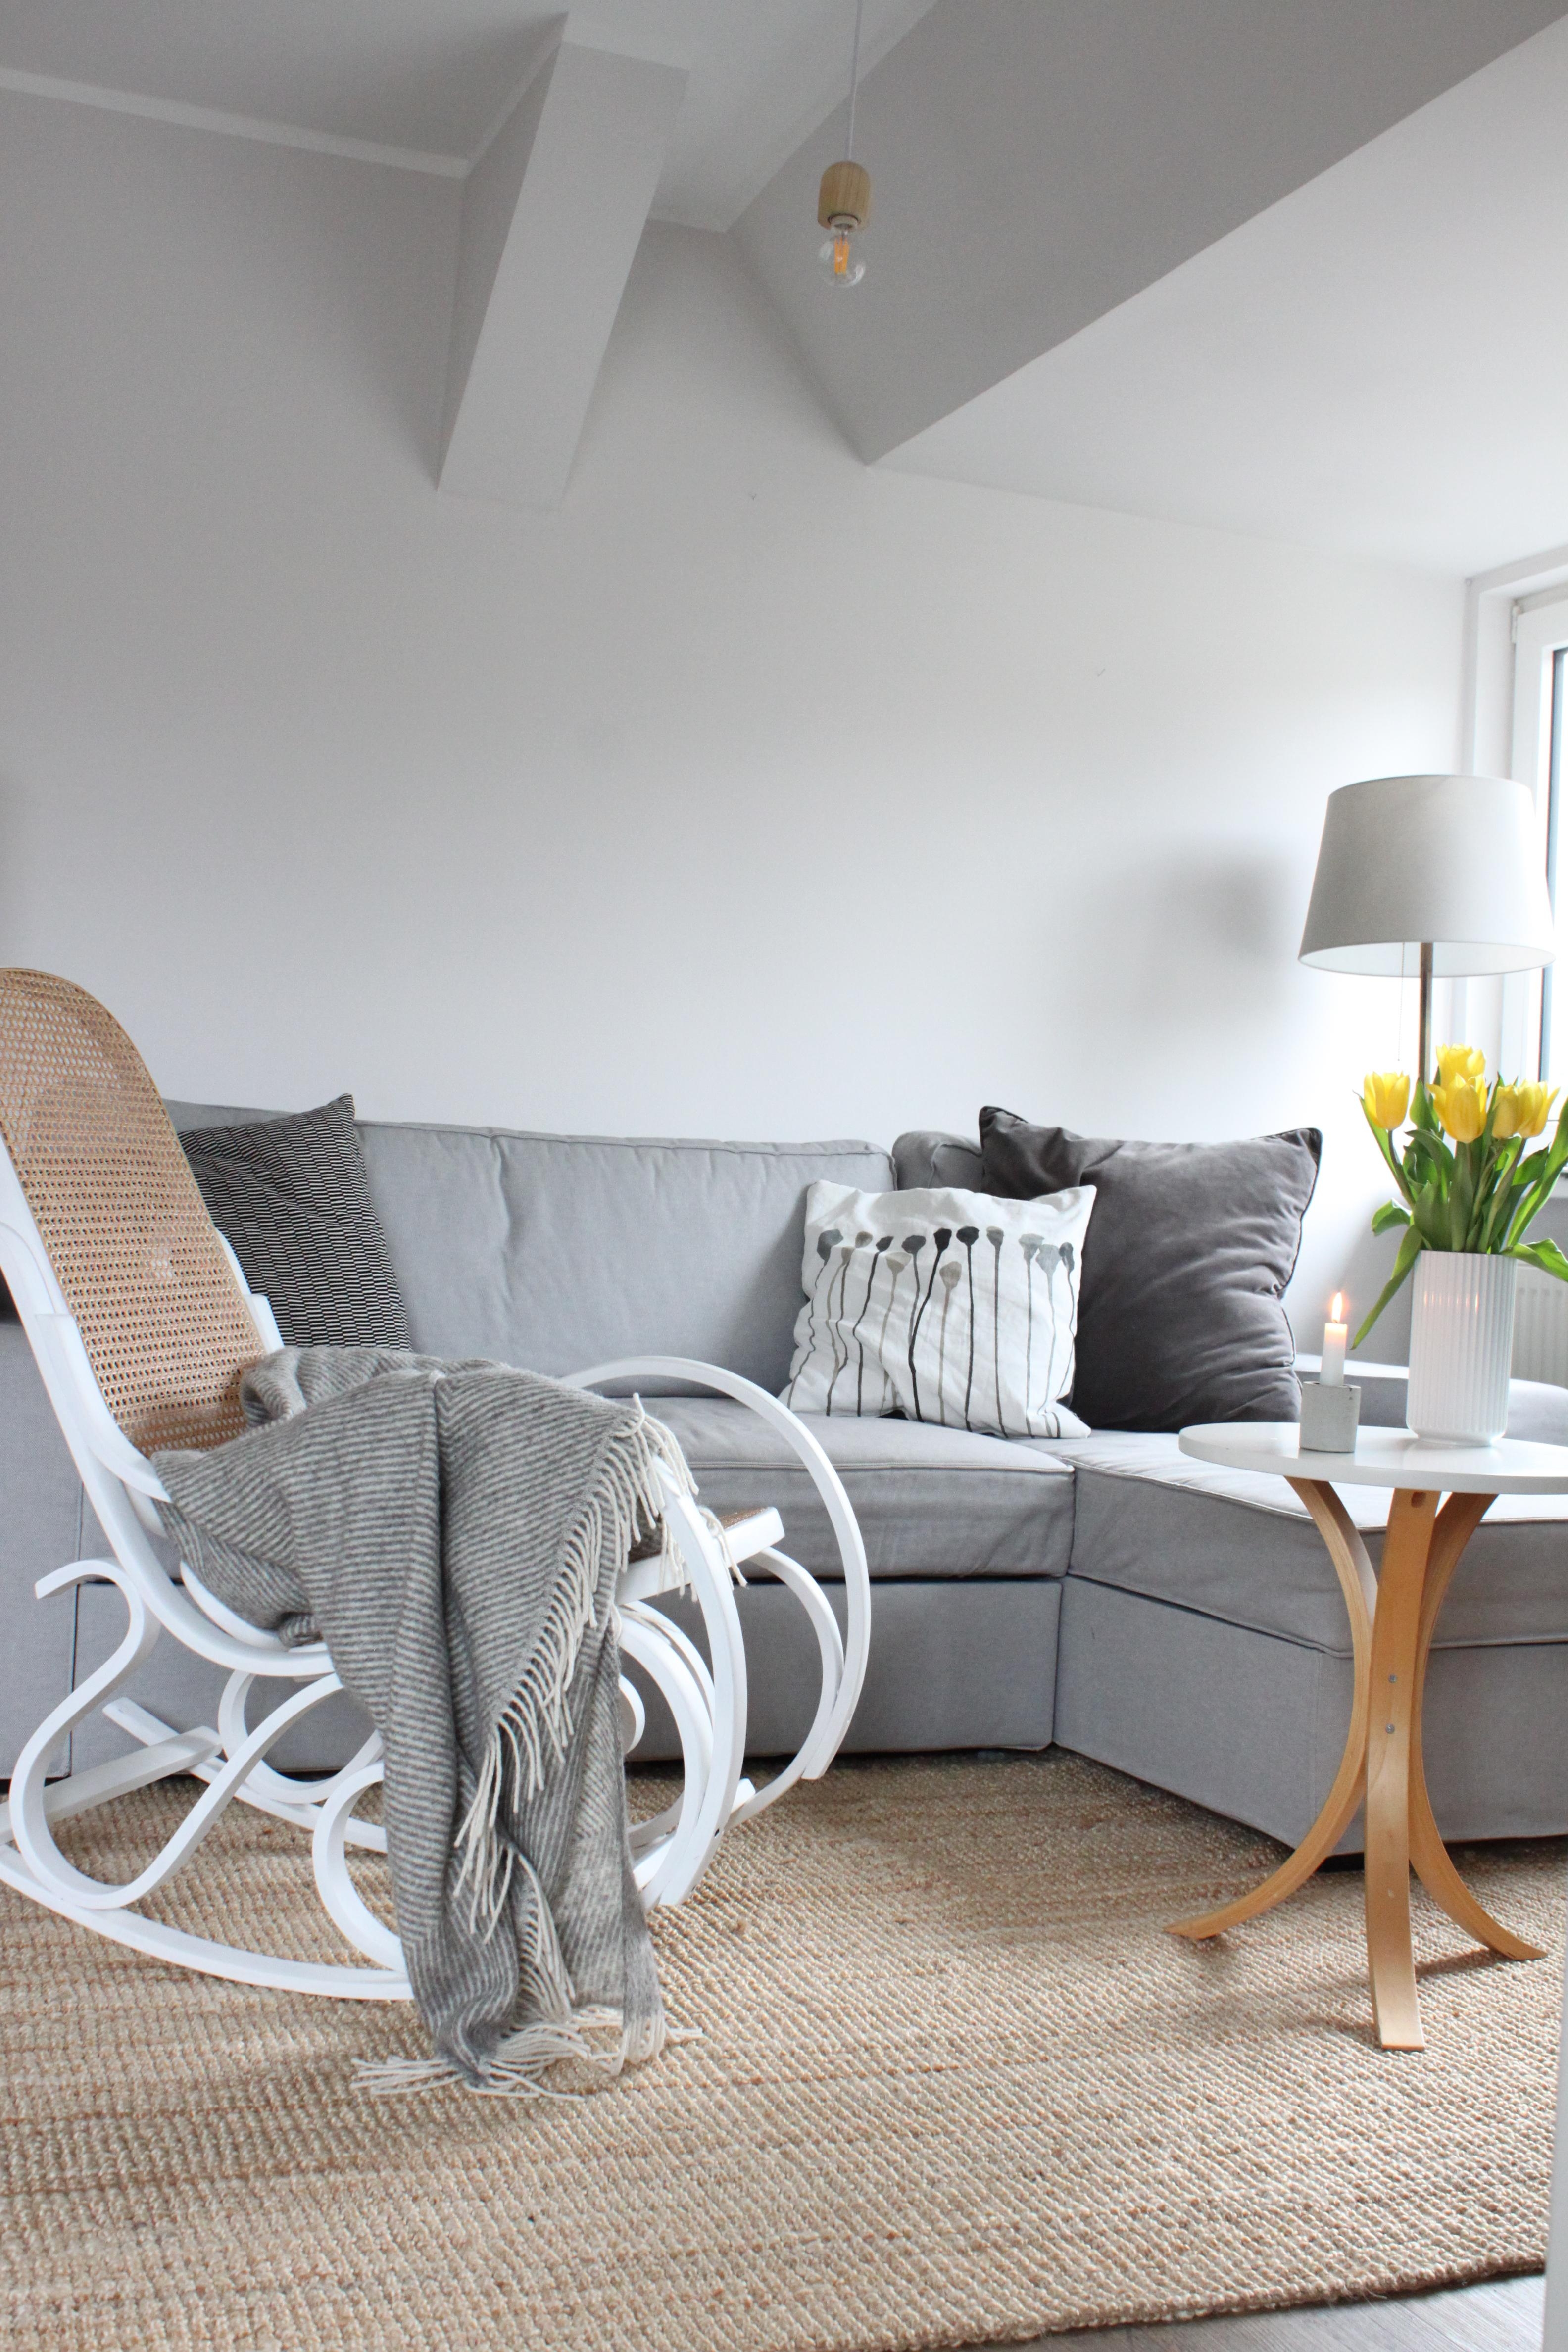 Endlich wieder Tulpenzeit. #tulpen #skandinavisch #wohnzimmer #couch #sofa #schaukelstuhl